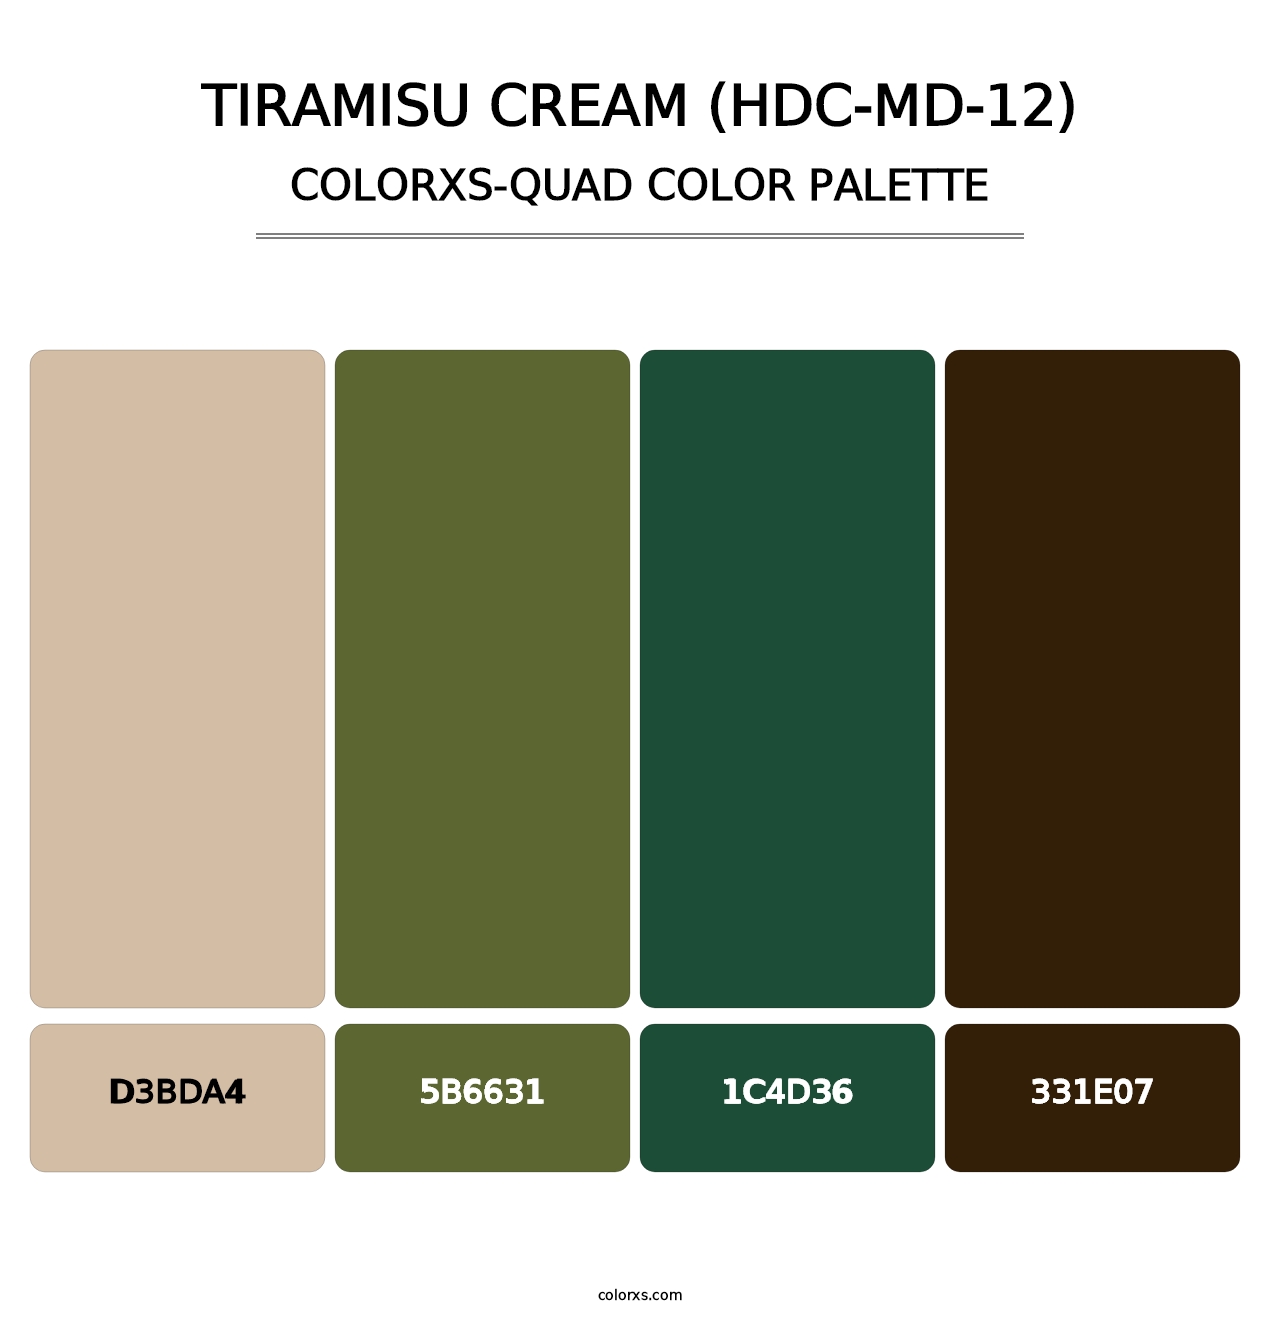 Tiramisu Cream (HDC-MD-12) - Colorxs Quad Palette